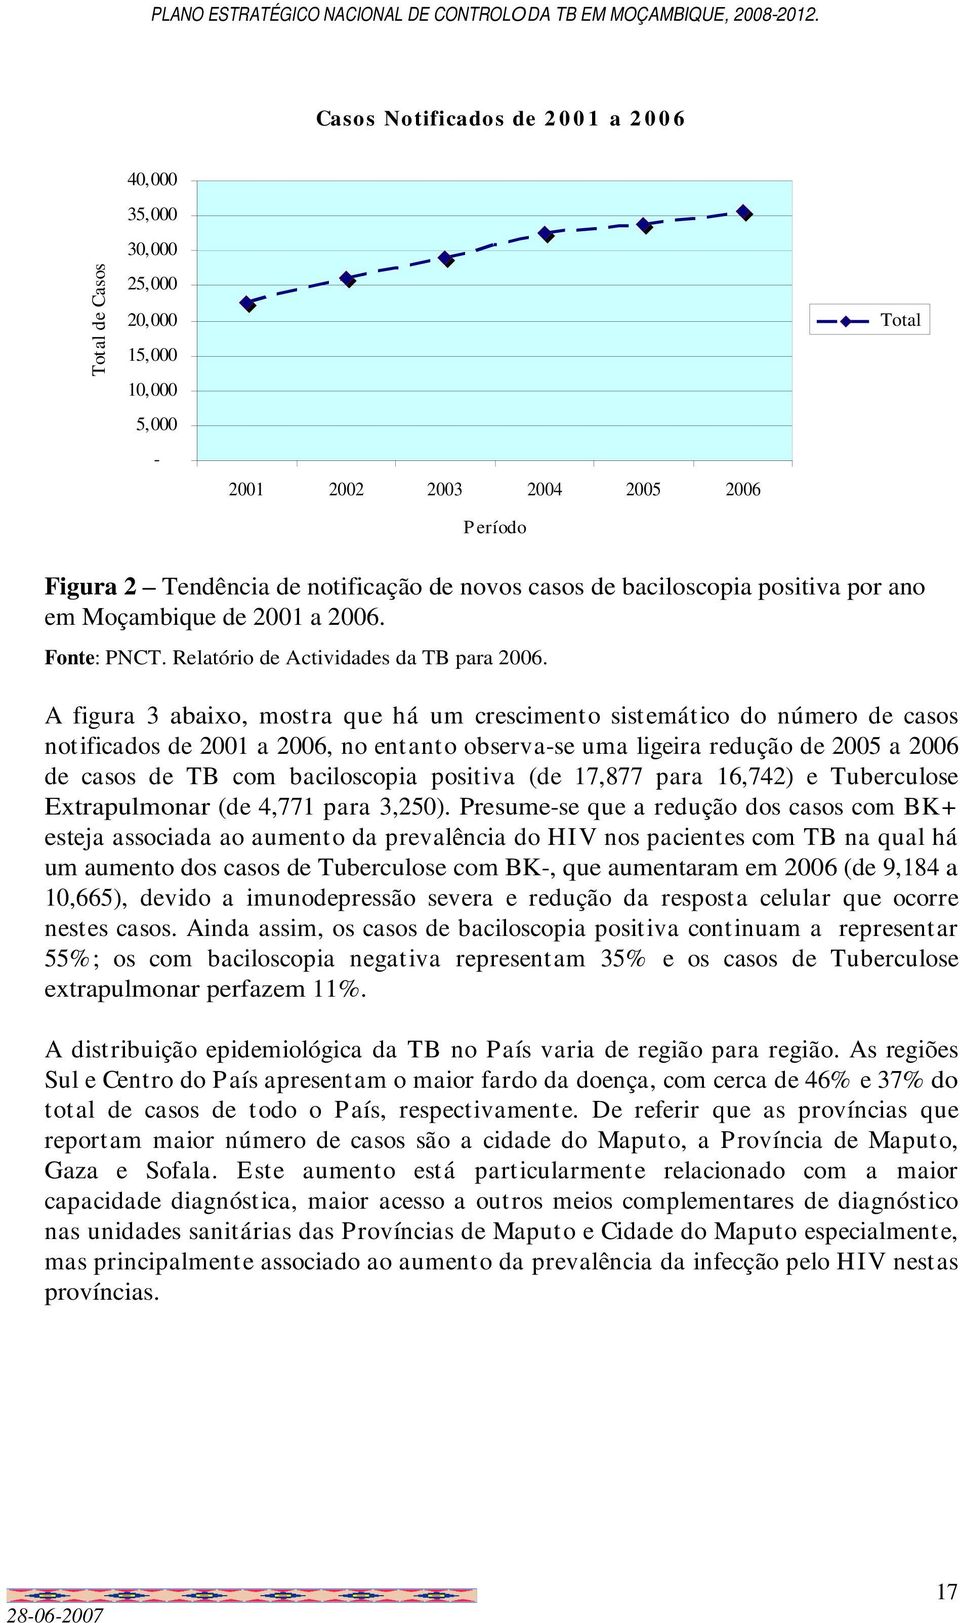 A figura 3 abaixo, mostra que há um crescimento sistemático do número de casos notificados de 2001 a 2006, no entanto observa-se uma ligeira redução de 2005 a 2006 de casos de TB com baciloscopia